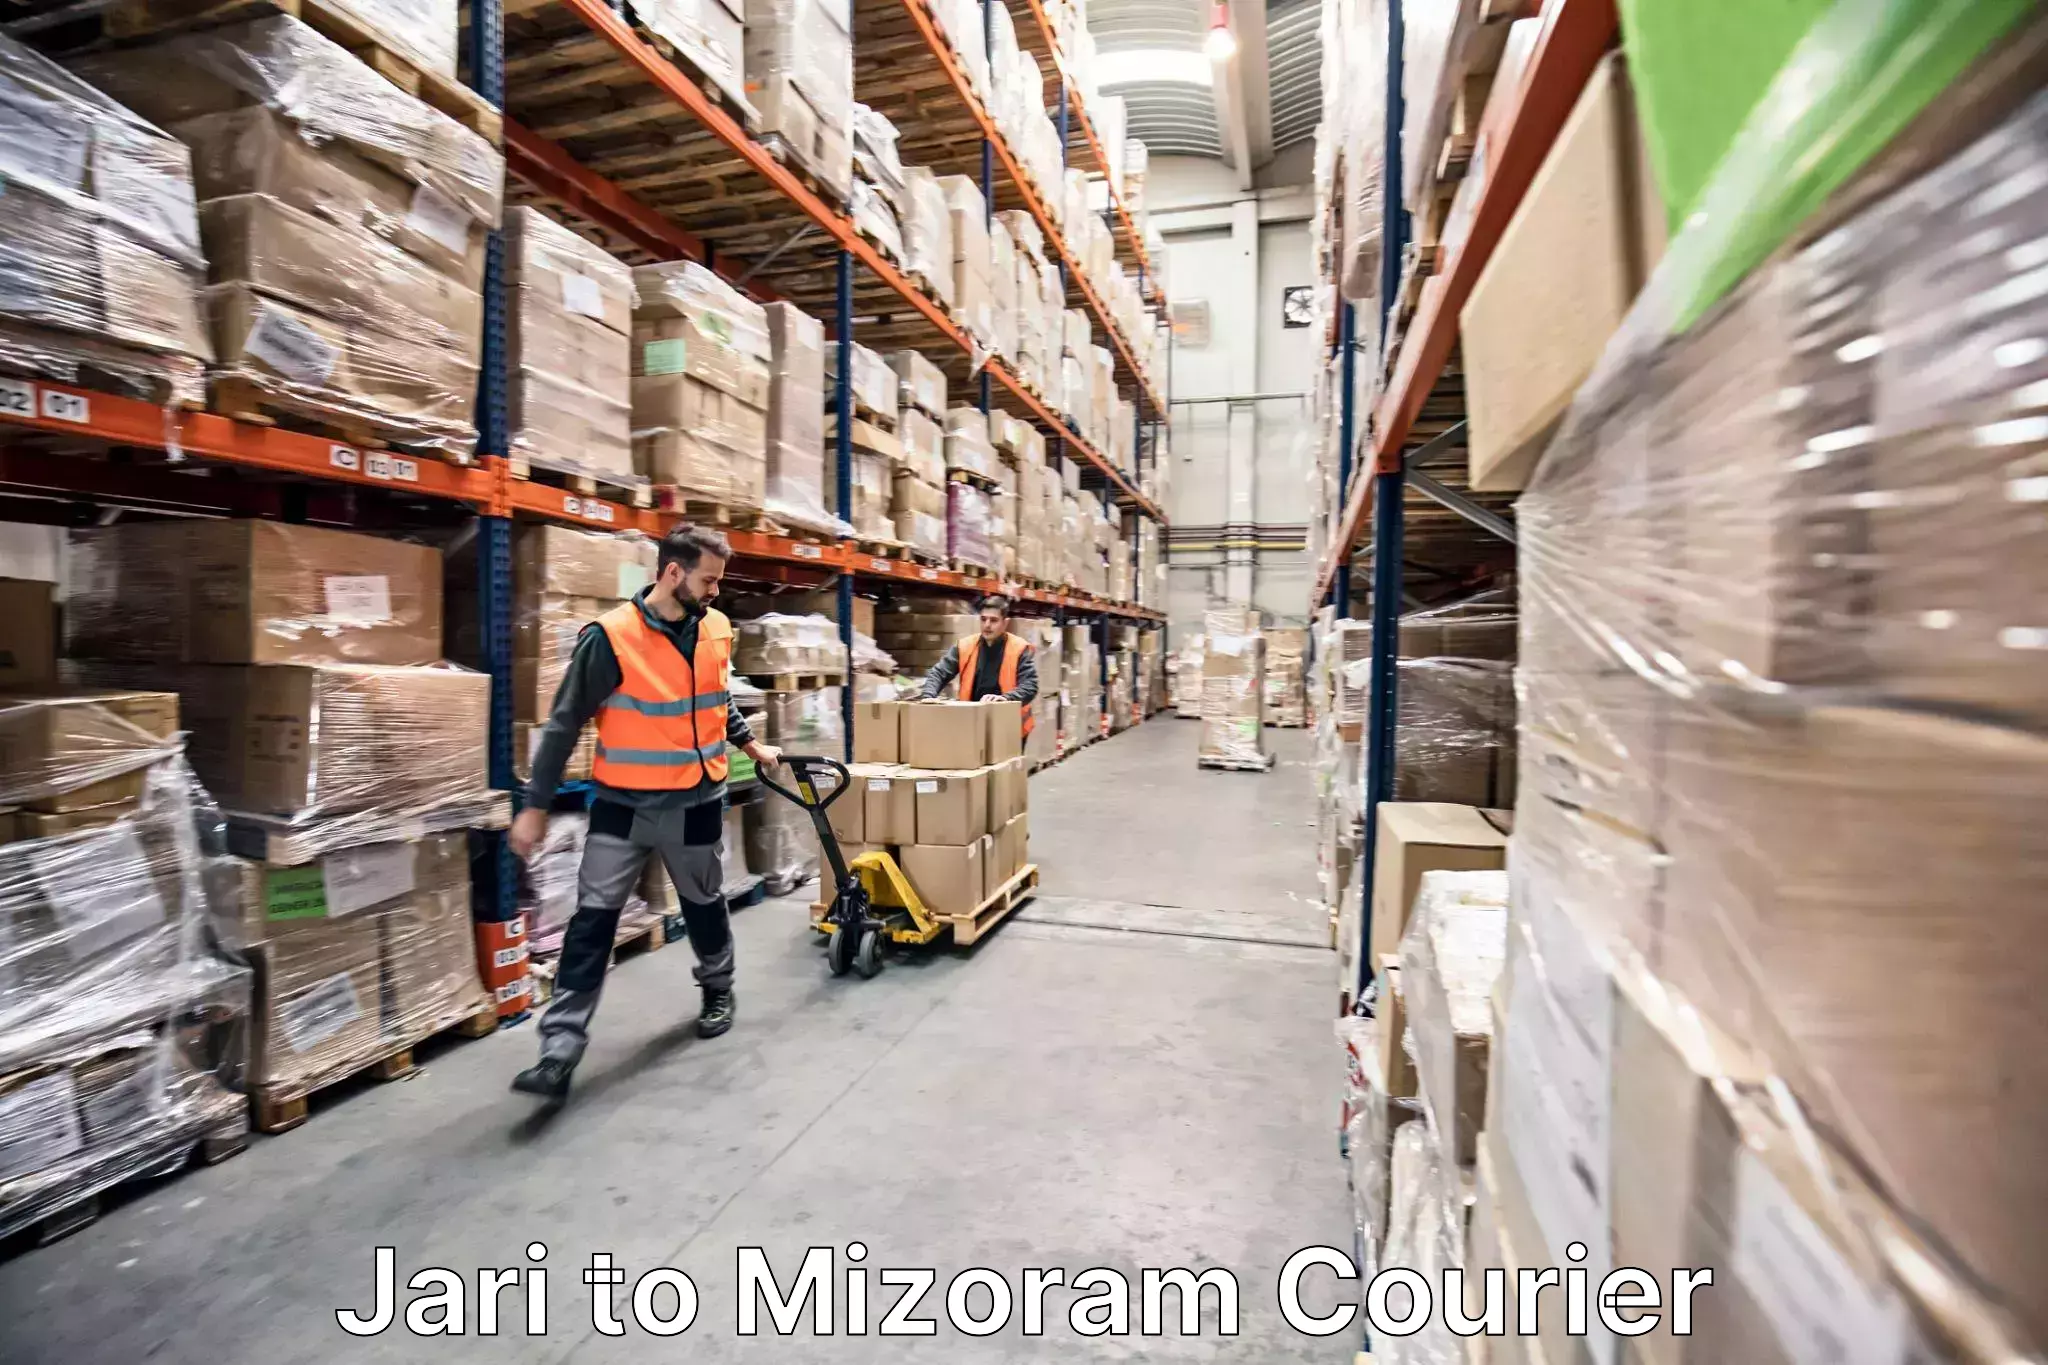 Efficient packing services in Jari to Mizoram